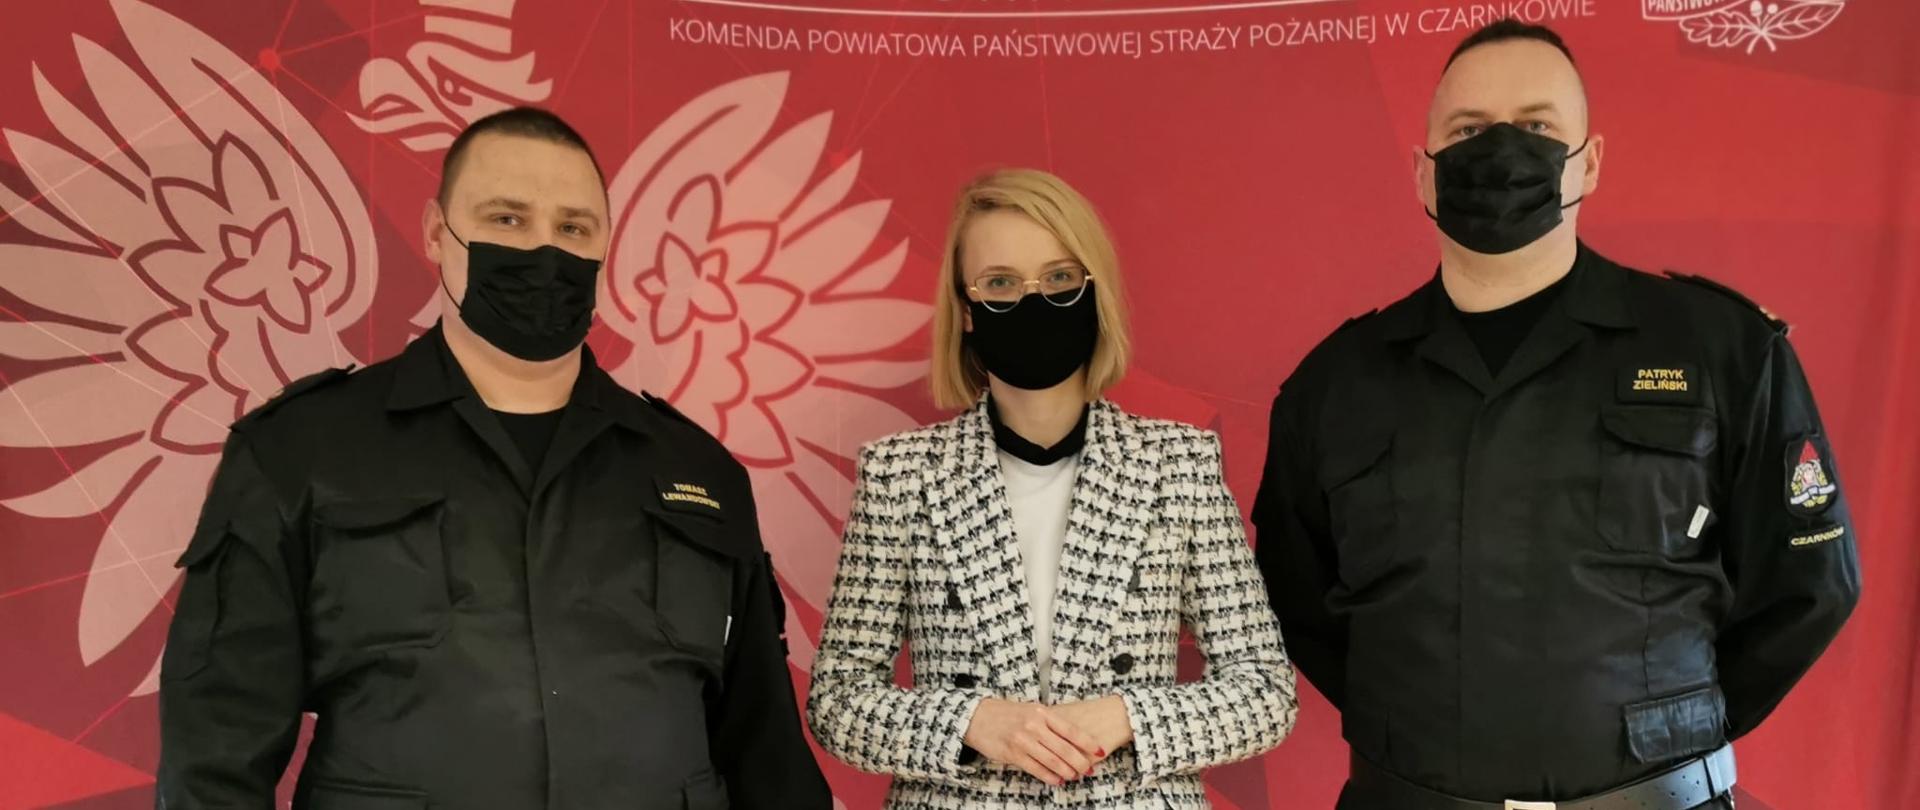 Funkcjonariusze z Panią Poseł stoją na tle baneru Komendy Powiatowej.